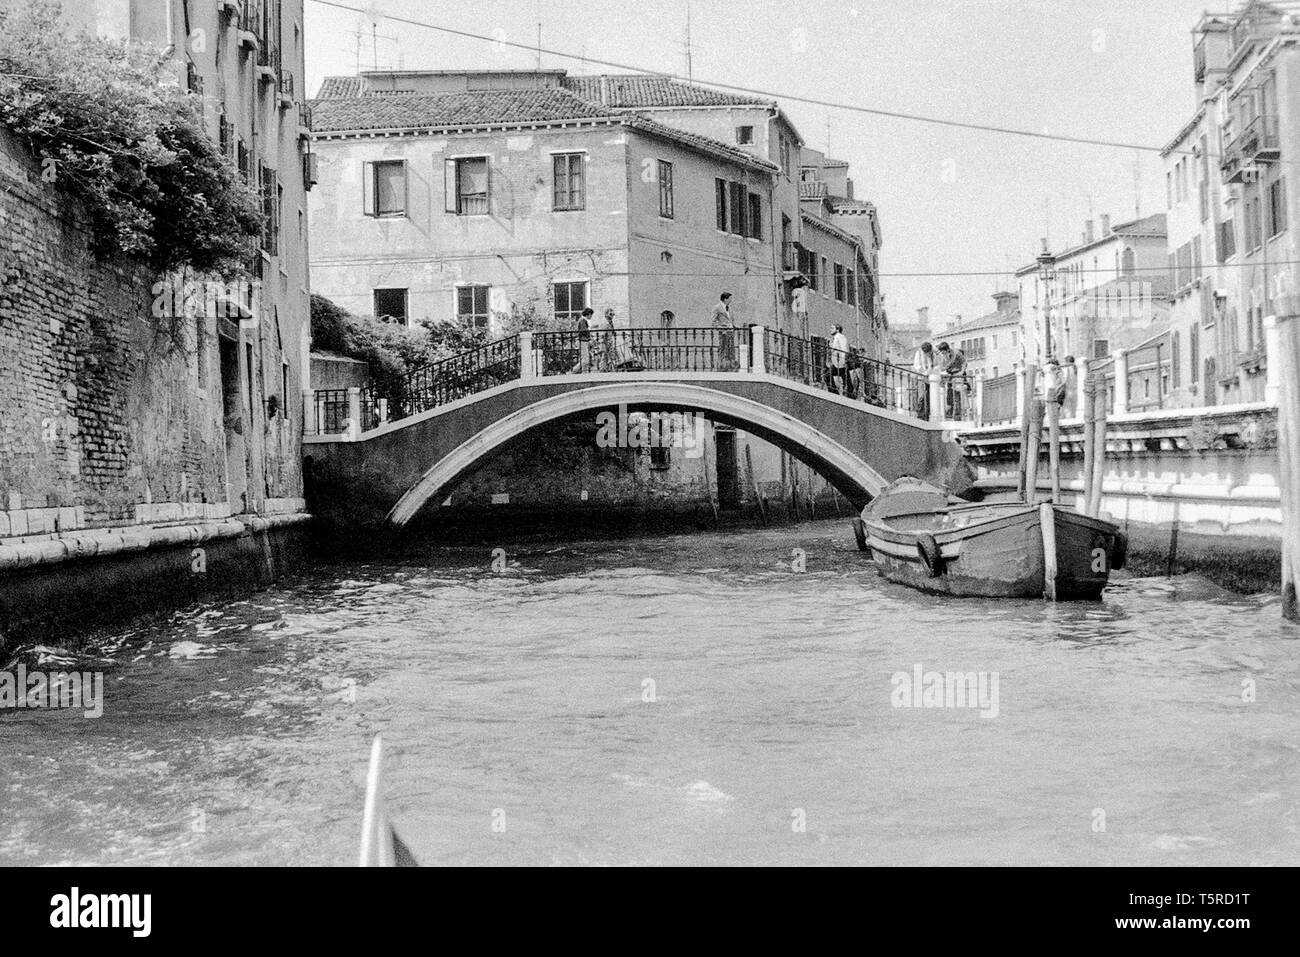 Venezia - Italien - 1980 - schwarz-weiß Foto: charakteristische Venedig Canal, schmal zwischen den Häusern mit einer kleinen Brücke im Vordergrund. Stockfoto